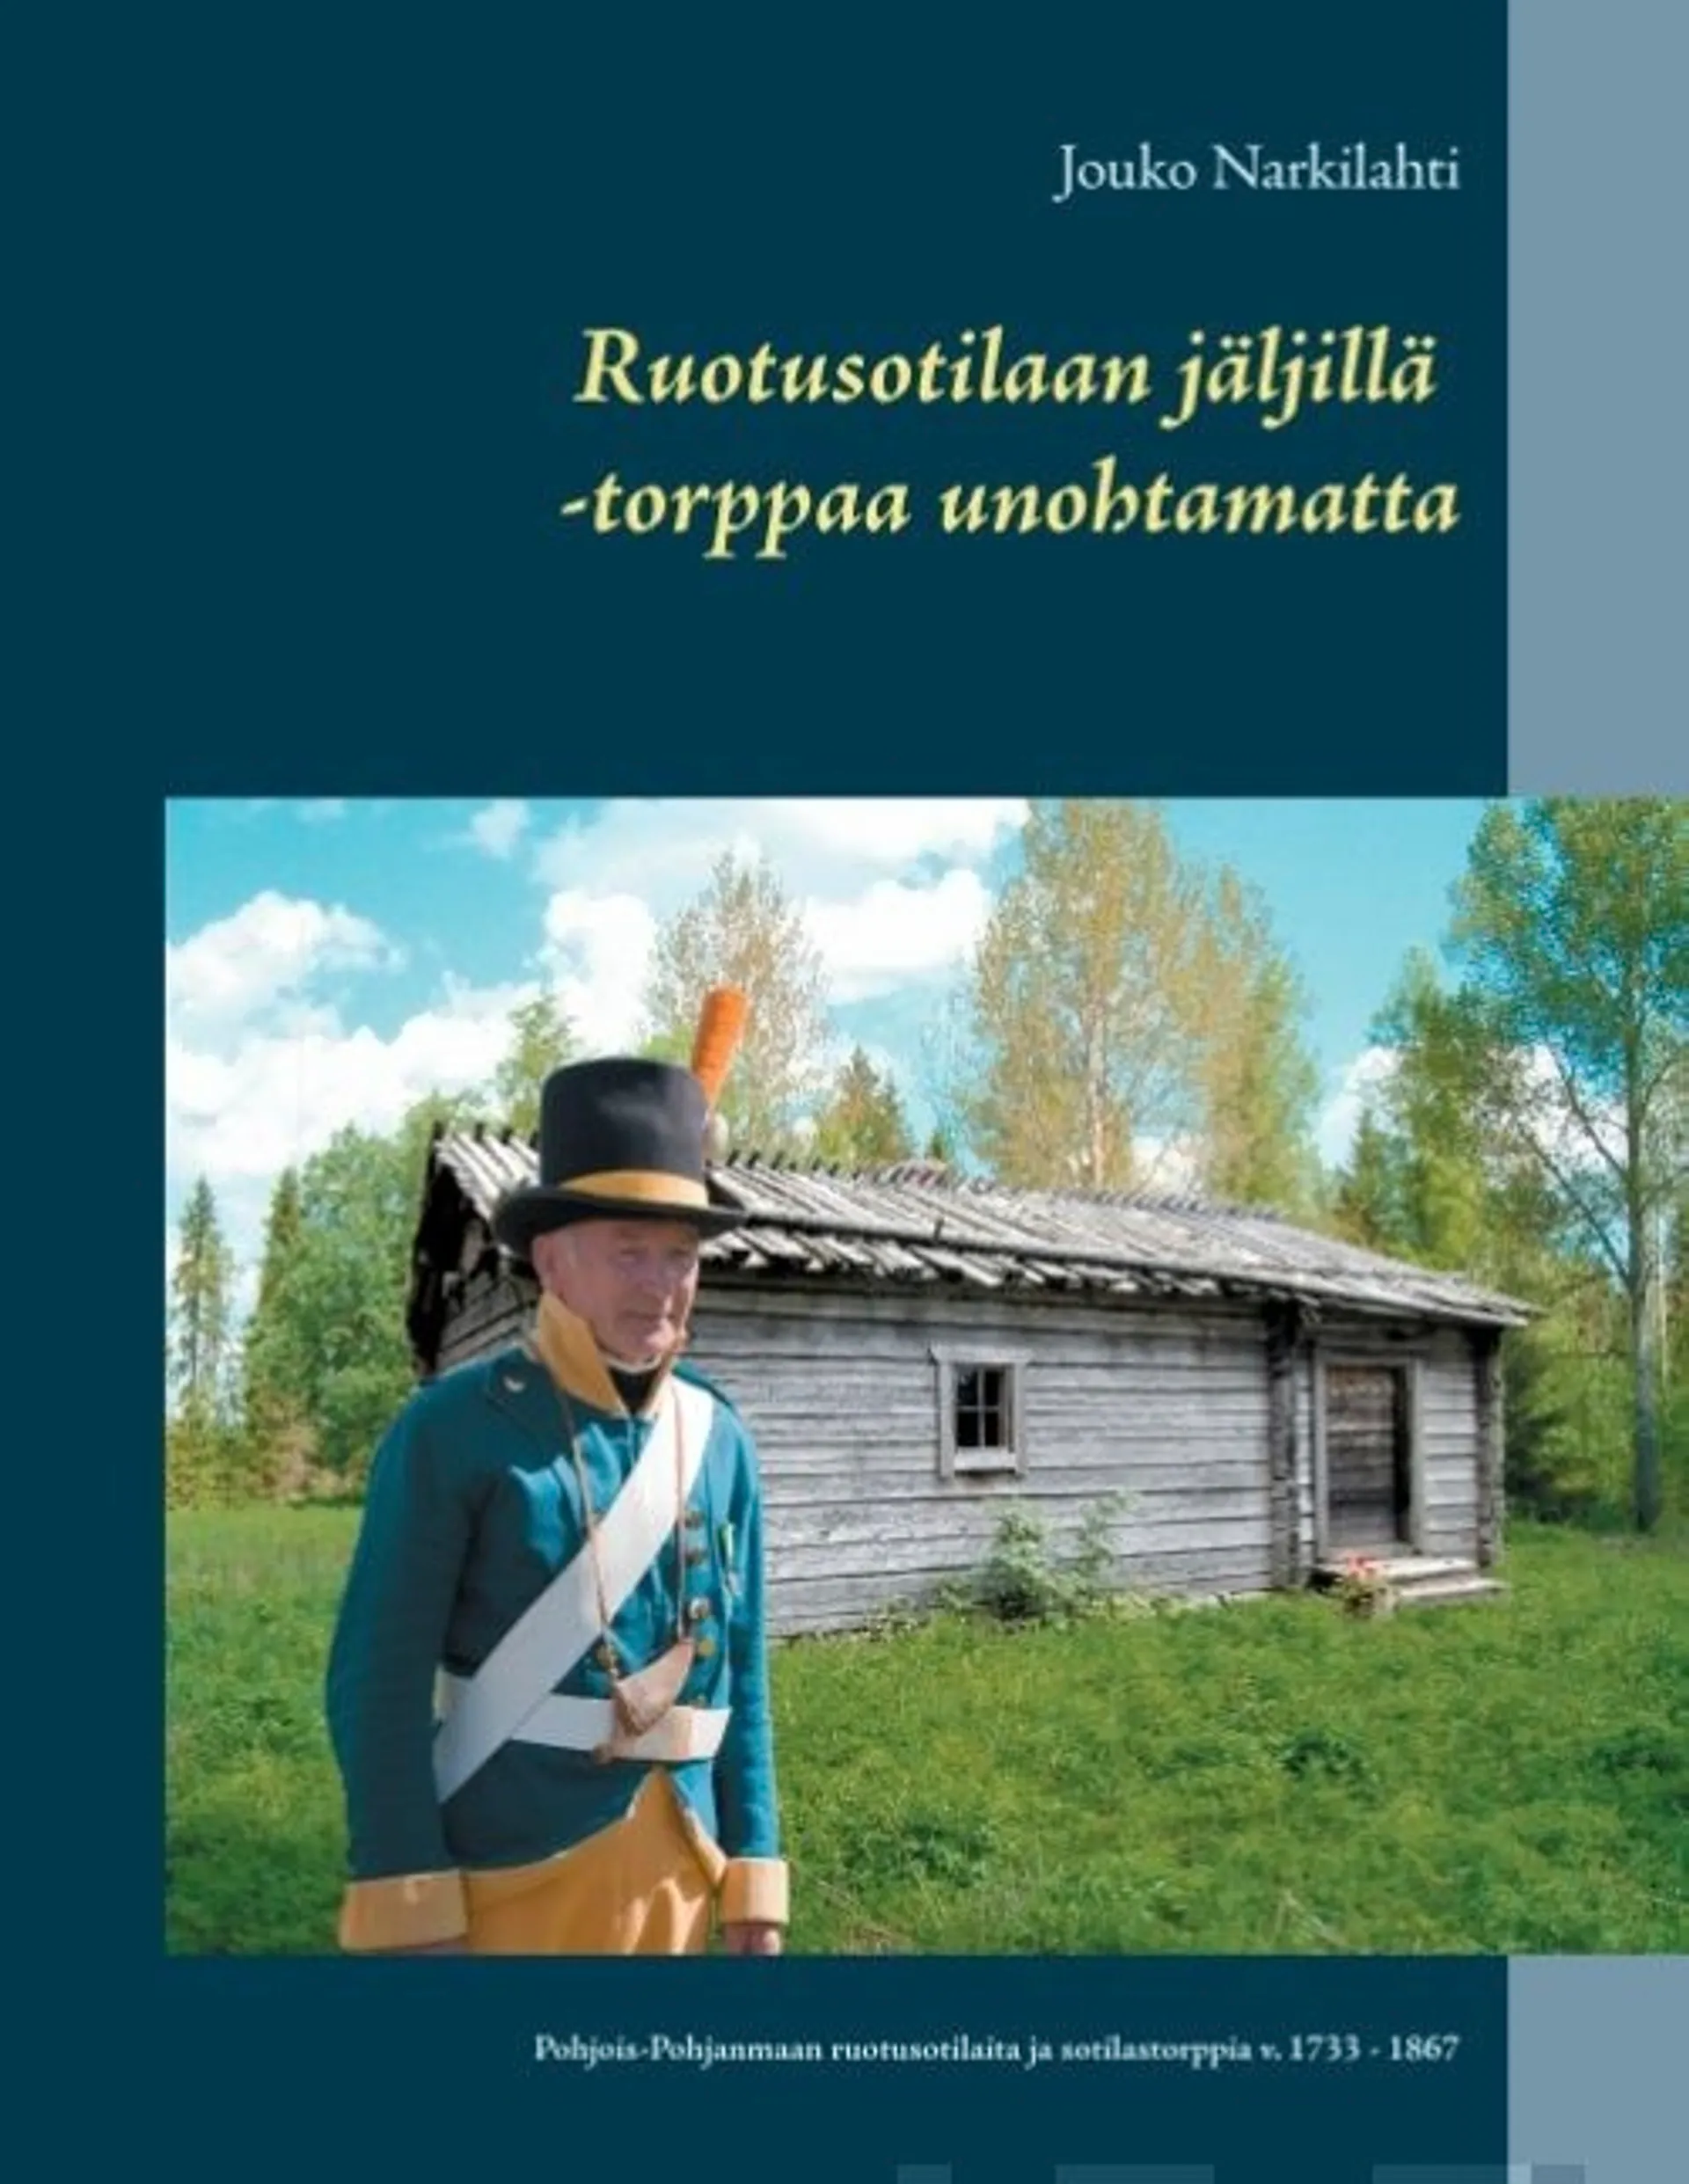 Narkilahti, Ruotusotilaan jäljillä - torppaa unohtamatta - Pohjois-Pohjanmaan ruotusotilaita ja sotilastorppia v. 1733 - 1867